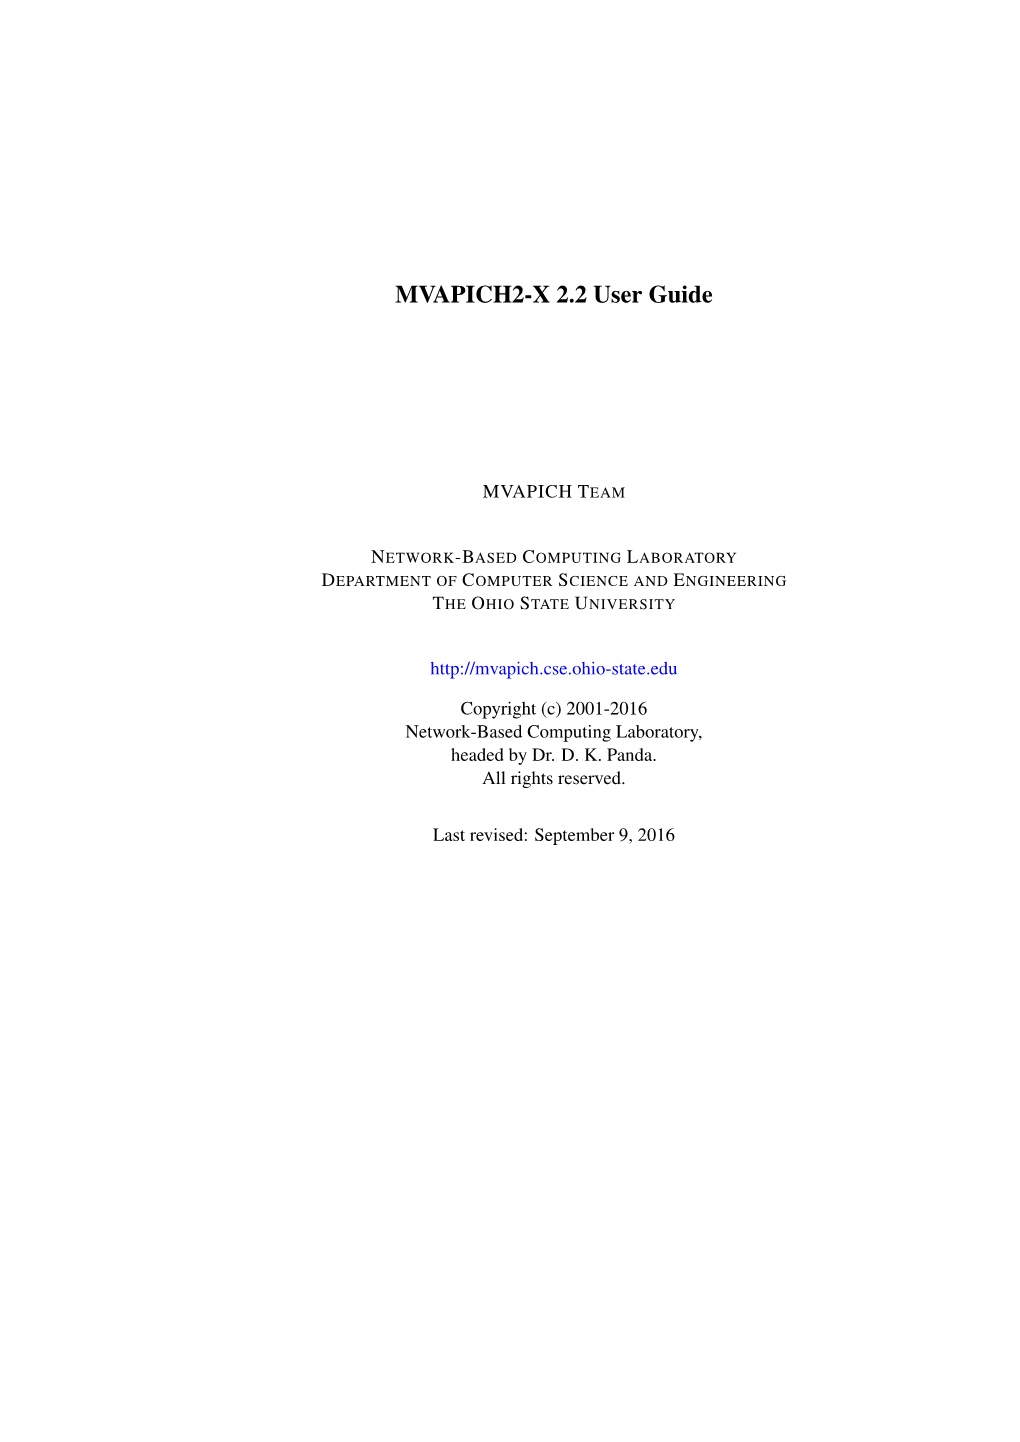 MVAPICH2-X 2.2 User Guide